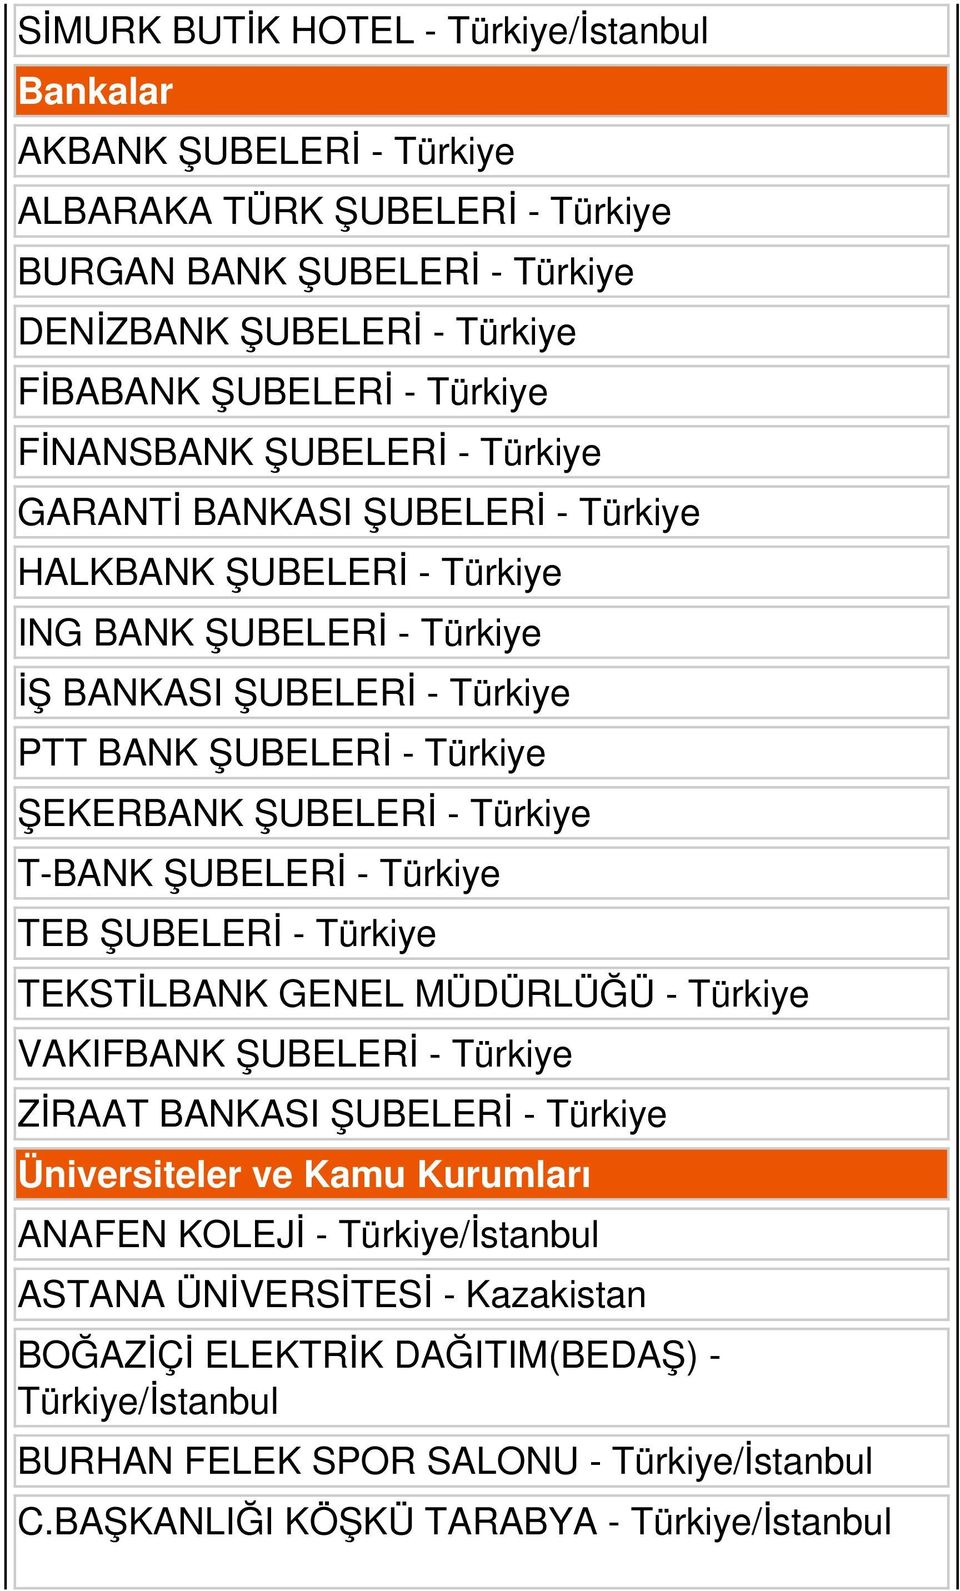 - Türkiye T-BANK ŞUBELERİ - Türkiye TEB ŞUBELERİ - Türkiye TEKSTİLBANK GENEL MÜDÜRLÜĞÜ - Türkiye VAKIFBANK ŞUBELERİ - Türkiye ZİRAAT BANKASI ŞUBELERİ - Türkiye Üniversiteler ve Kamu Kurumları